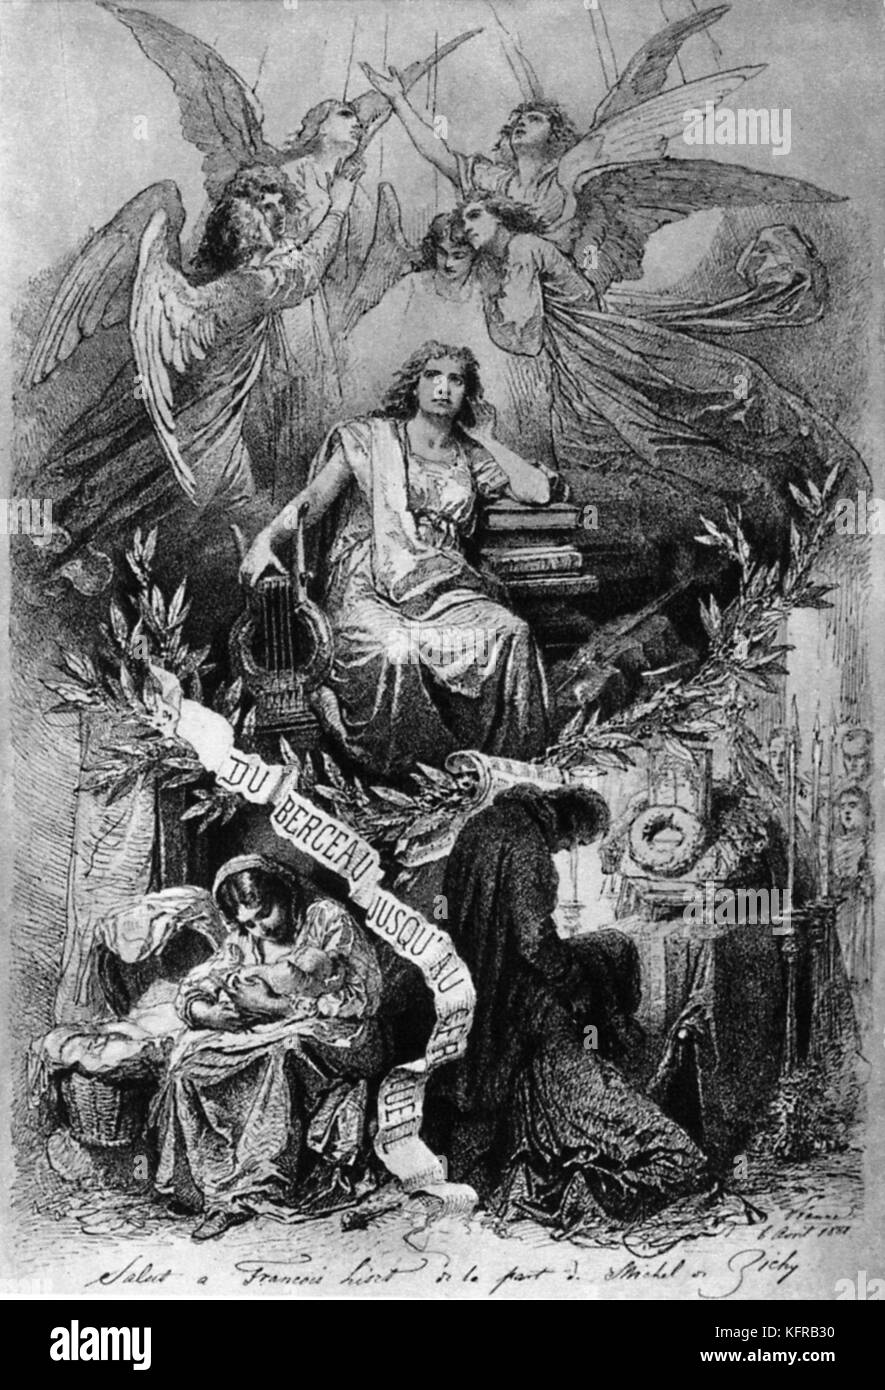 Du berceau Jusqu'au Cercueil (von der Wiege bis zur Bahre). Franz Liszts Apotheose. Gravur nach einer Zeichnung von Michel de Zichy. Ungarische Pianist und Komponist, 22. Oktober 1811 - vom 31. Juli 1886. Stockfoto